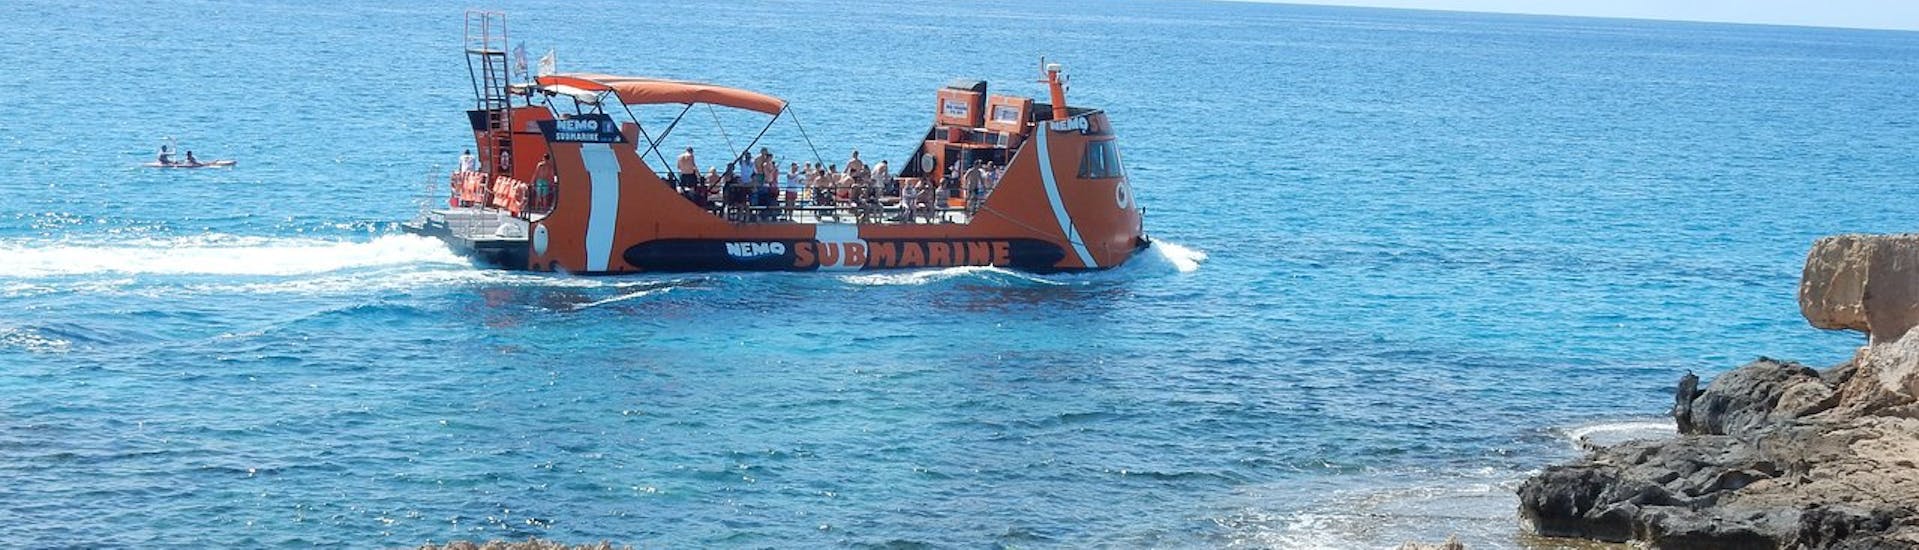 Le bateau vu d'une grotte lors de son voyage le long de la côte d'Ayia Napa avec Nemo Submarine.